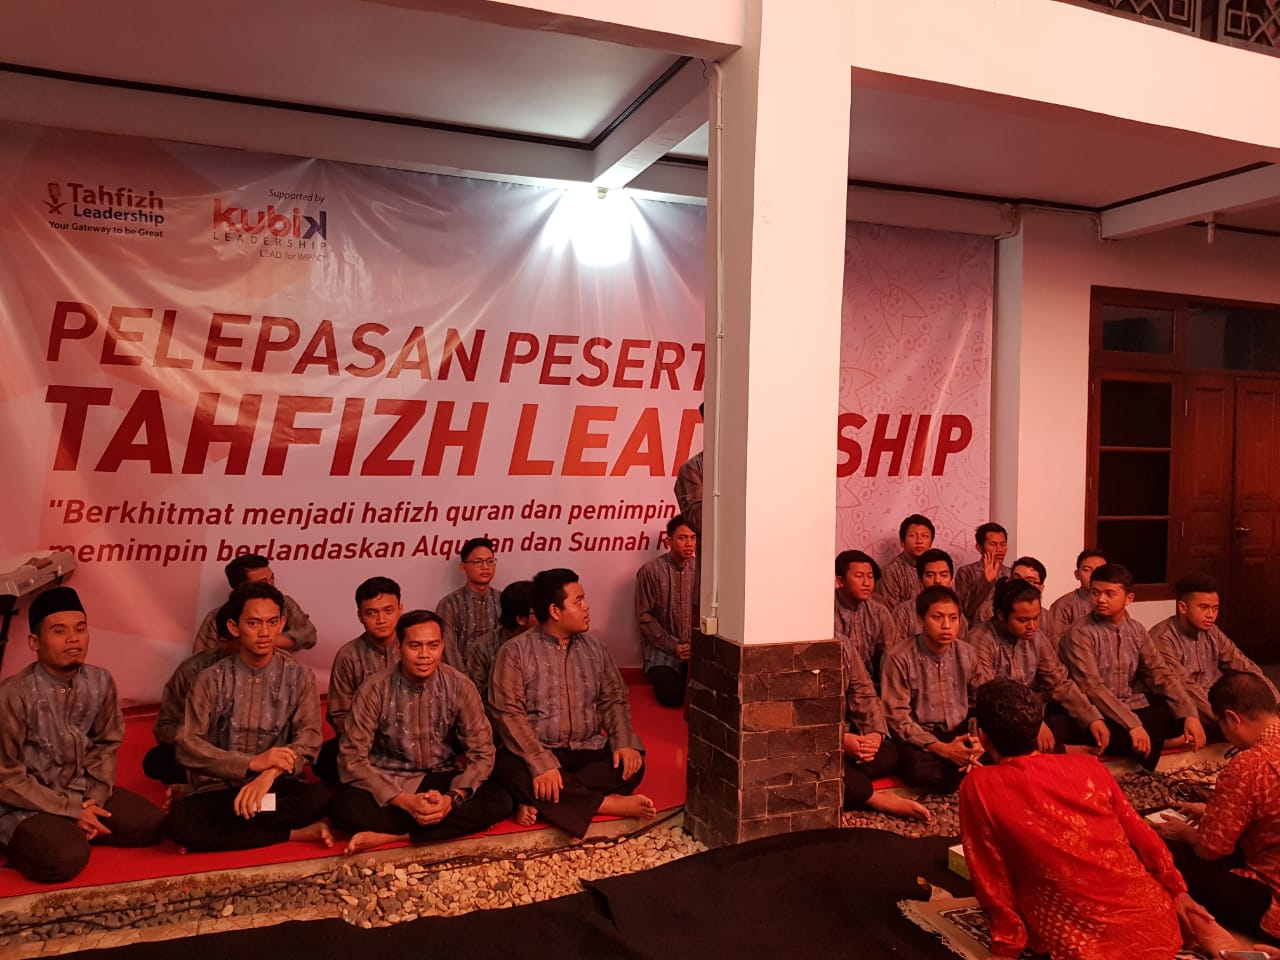 Pelepasan Calon Pemmpin Masa Depan Dari Tahfizh Leadership Trainer Indonesia